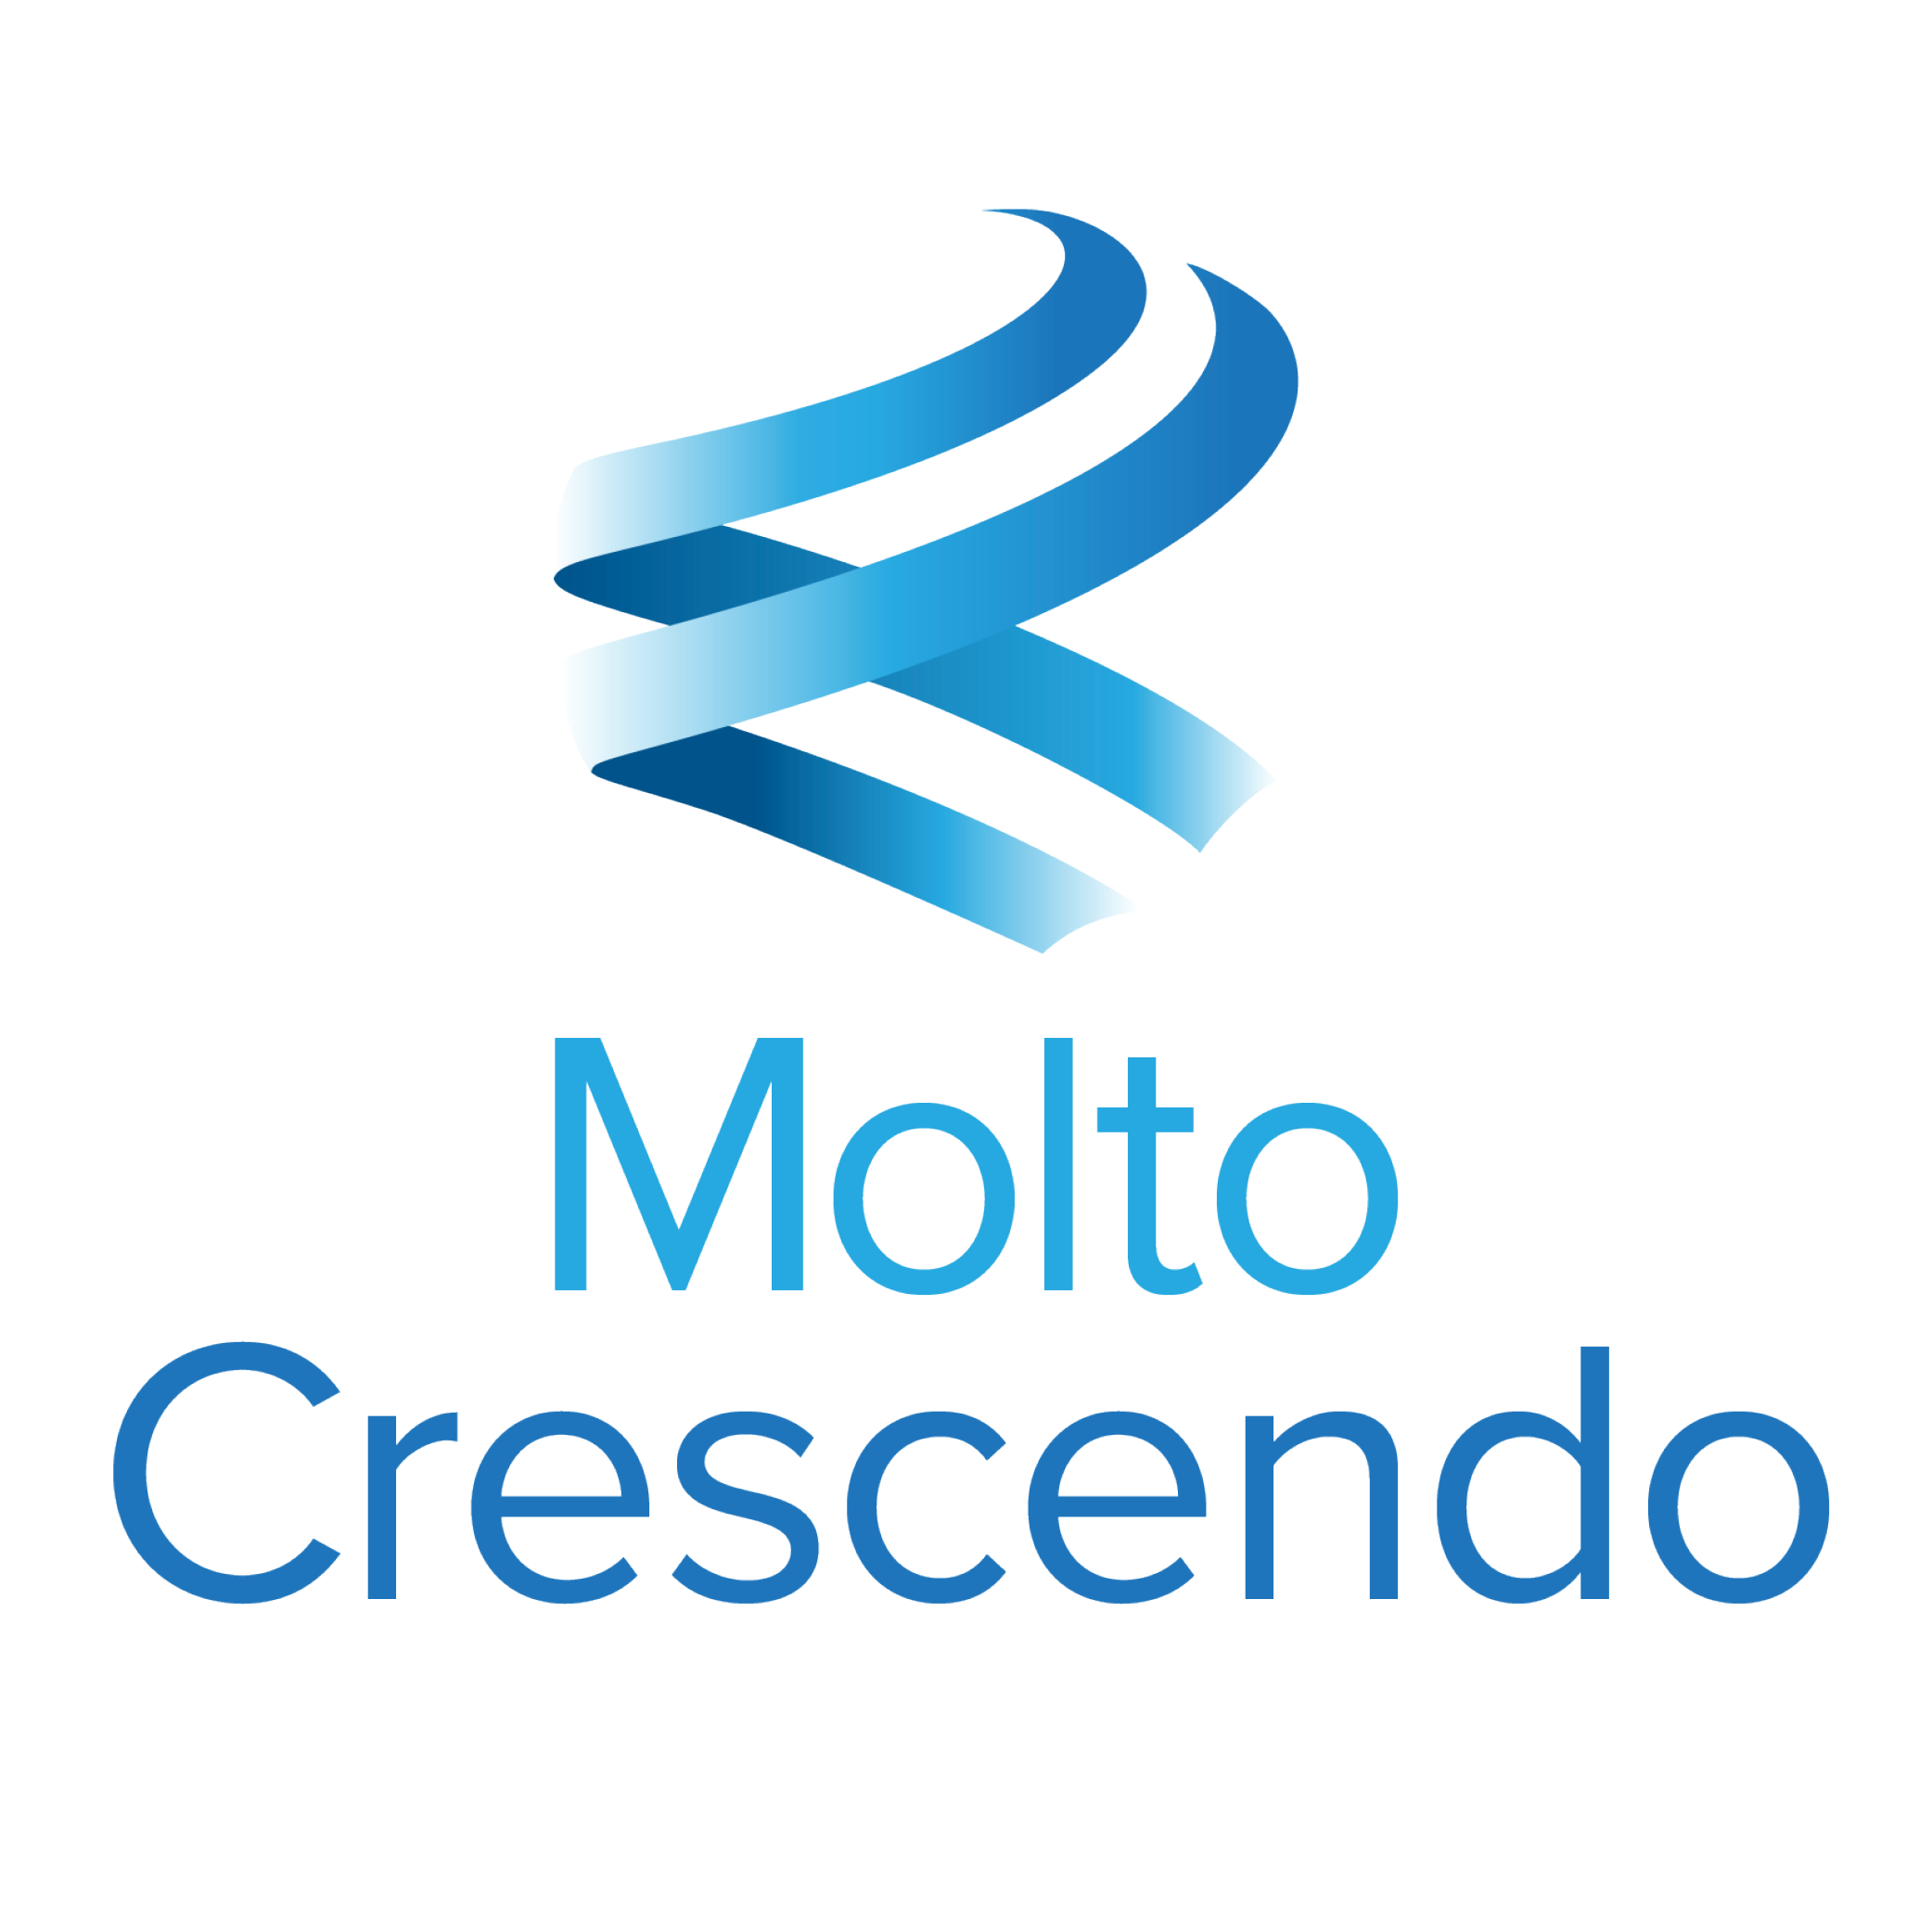 Molto Crescendo, Inc